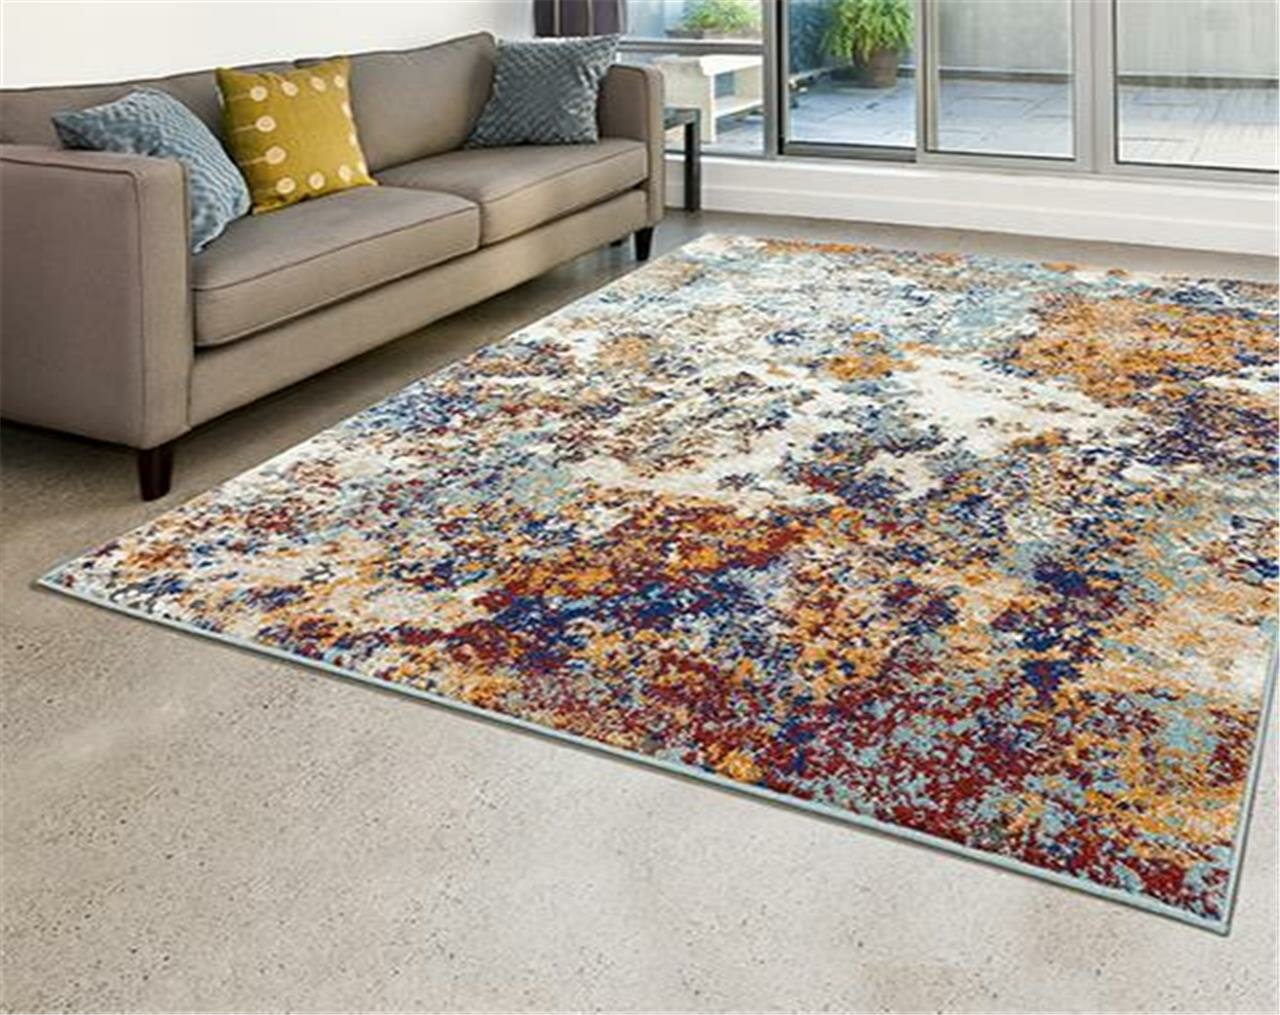 63x48 Inch Soft Area Rug with Elegant Floral Floor Rug,Non-Slip Large Carpet for Bedroom,Living Room,Kids Room 